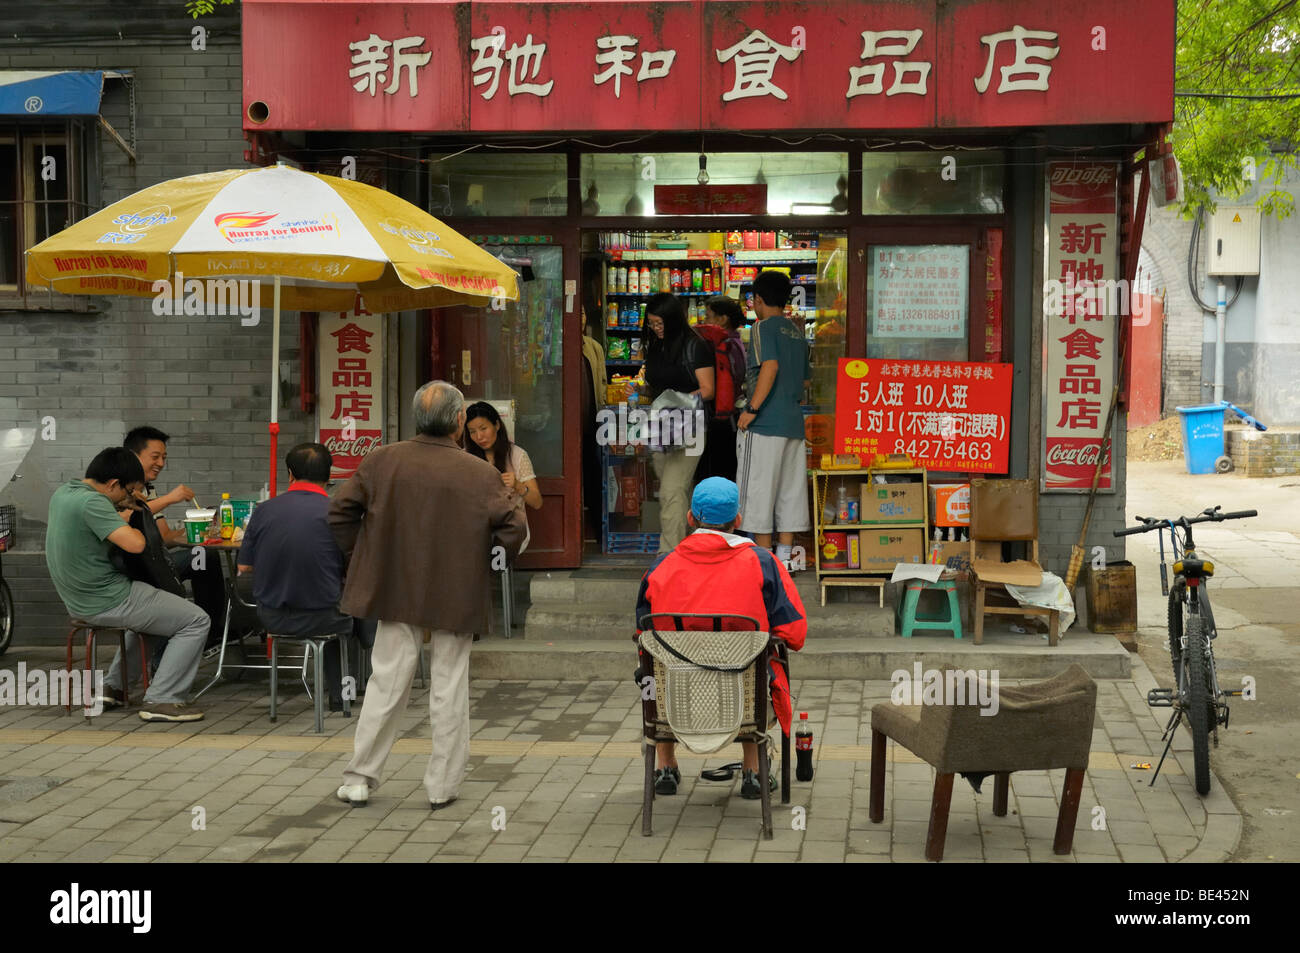 A street scene near the Lama Temple Yong He Gong, Beijing CN Stock Photo